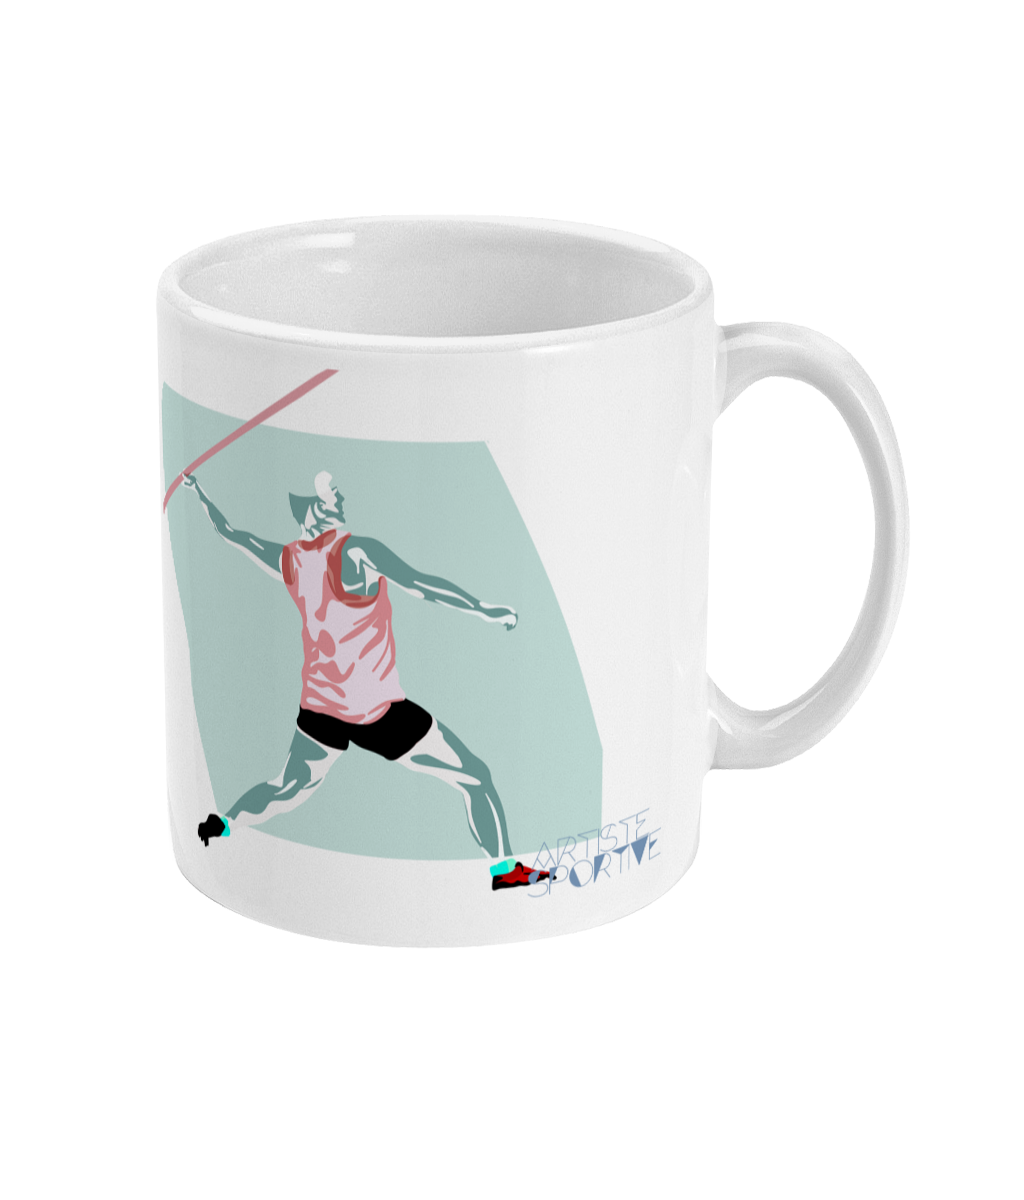 Leichtathletik-Tasse oder Becher „Men's Javelin“ - Individualisierbar